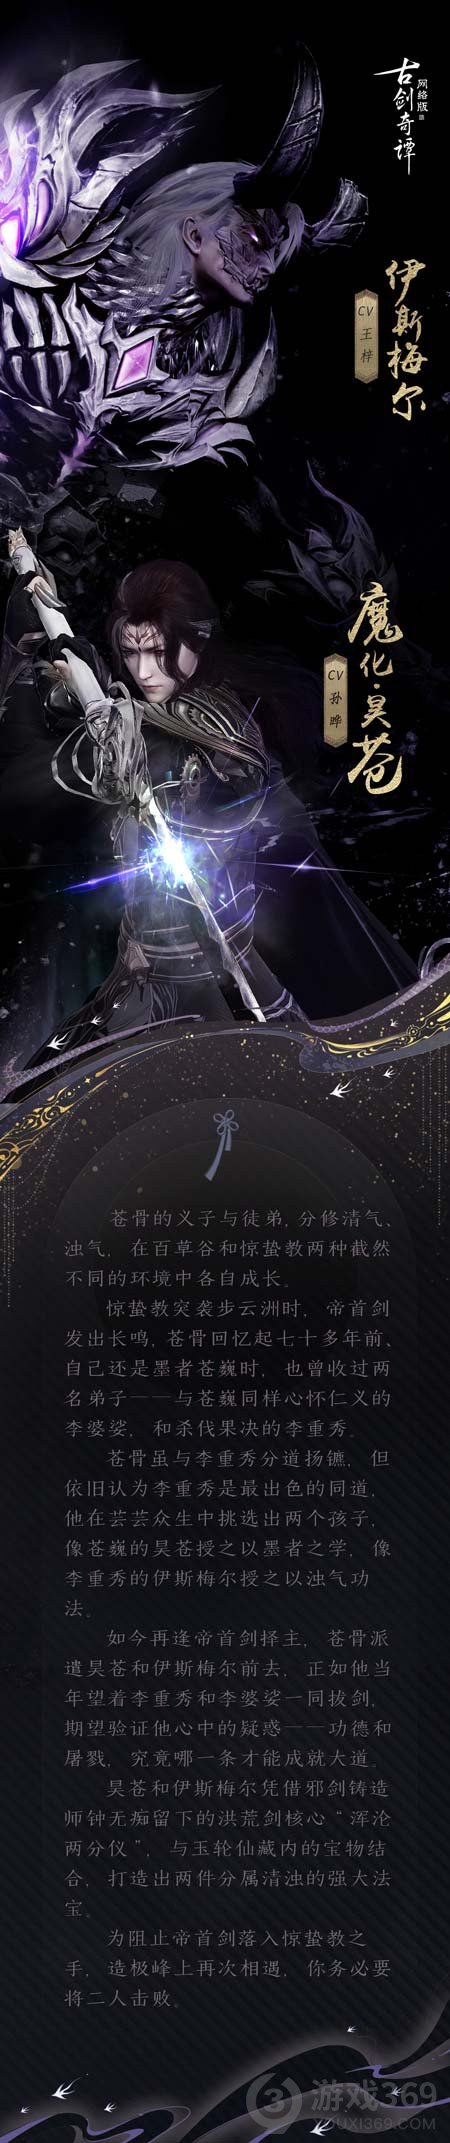 《古剑奇谭网络版》全新团队秘境“问鼎剑台”即将开放!